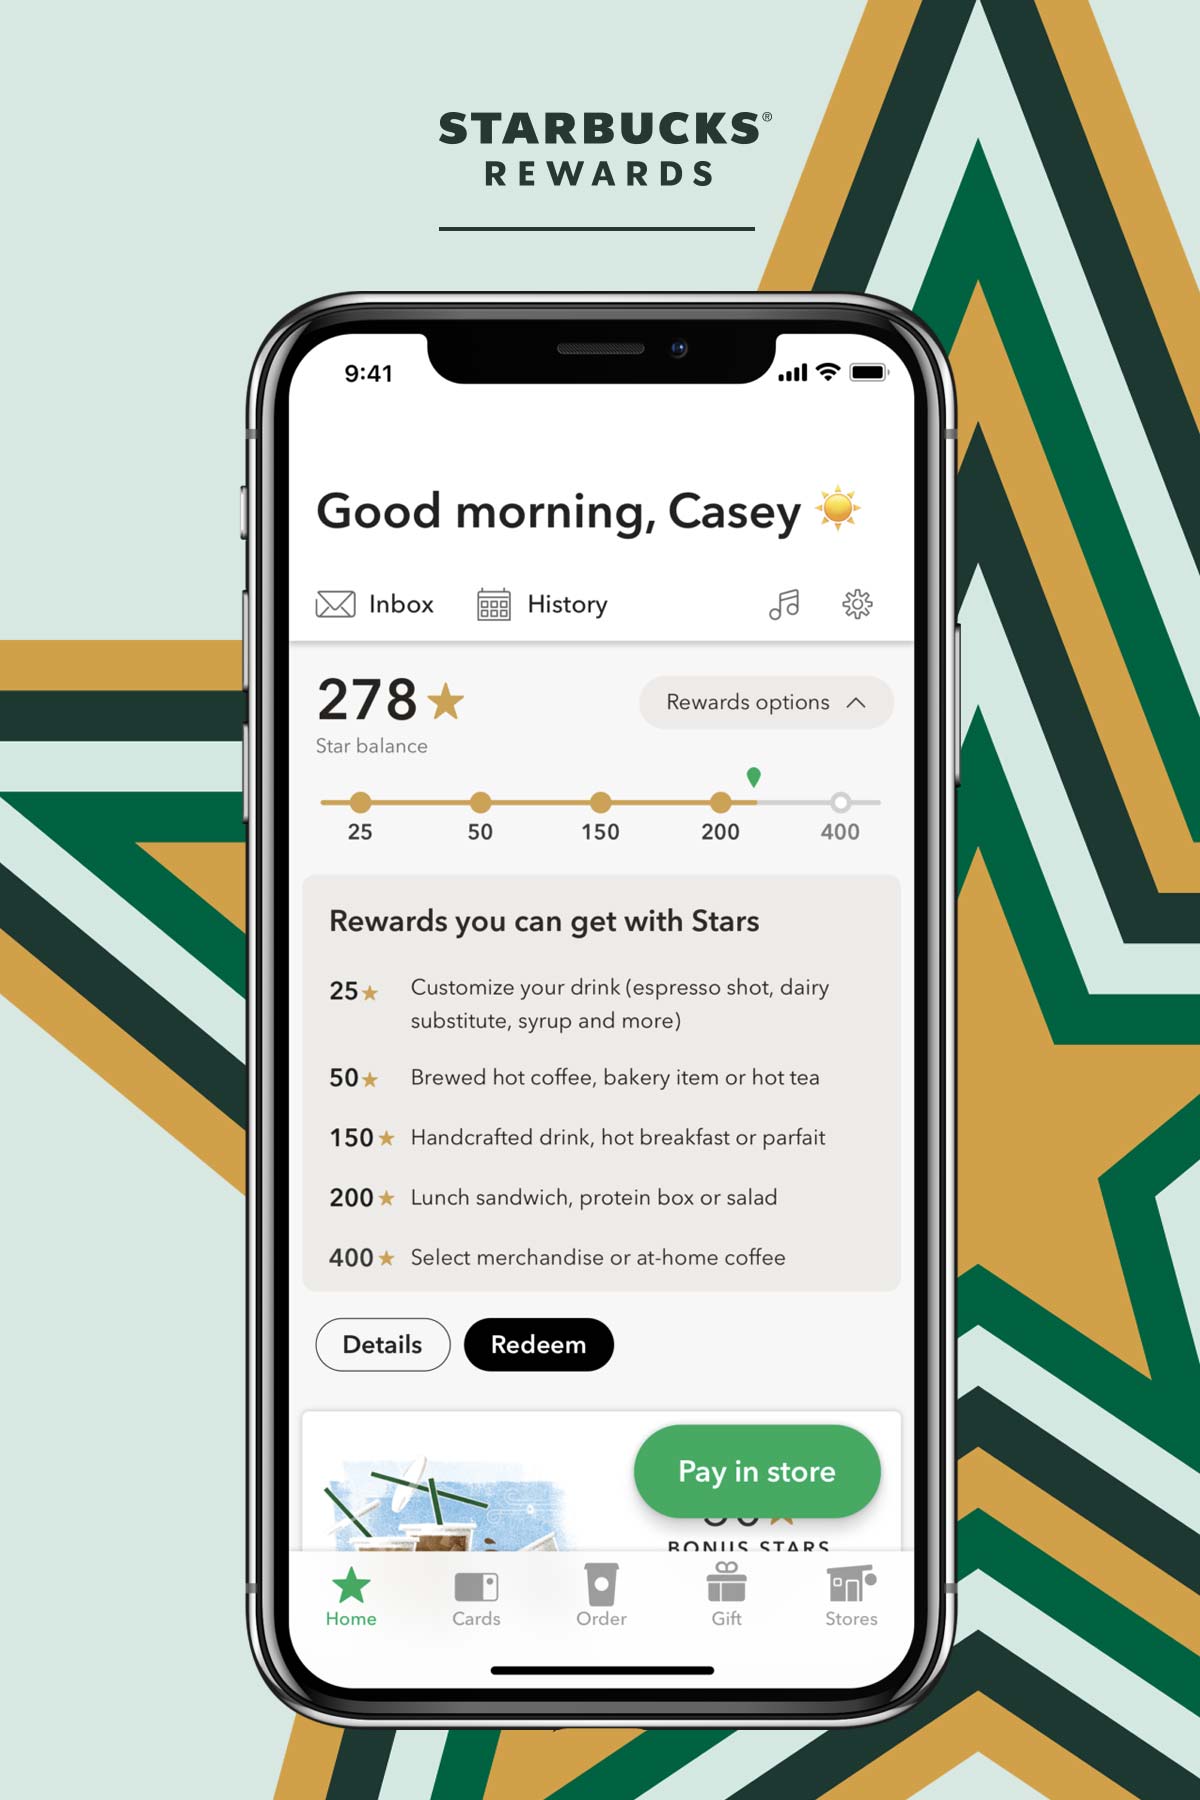 Starbucks beloont grafisch met een gigantische ster en iPhone.